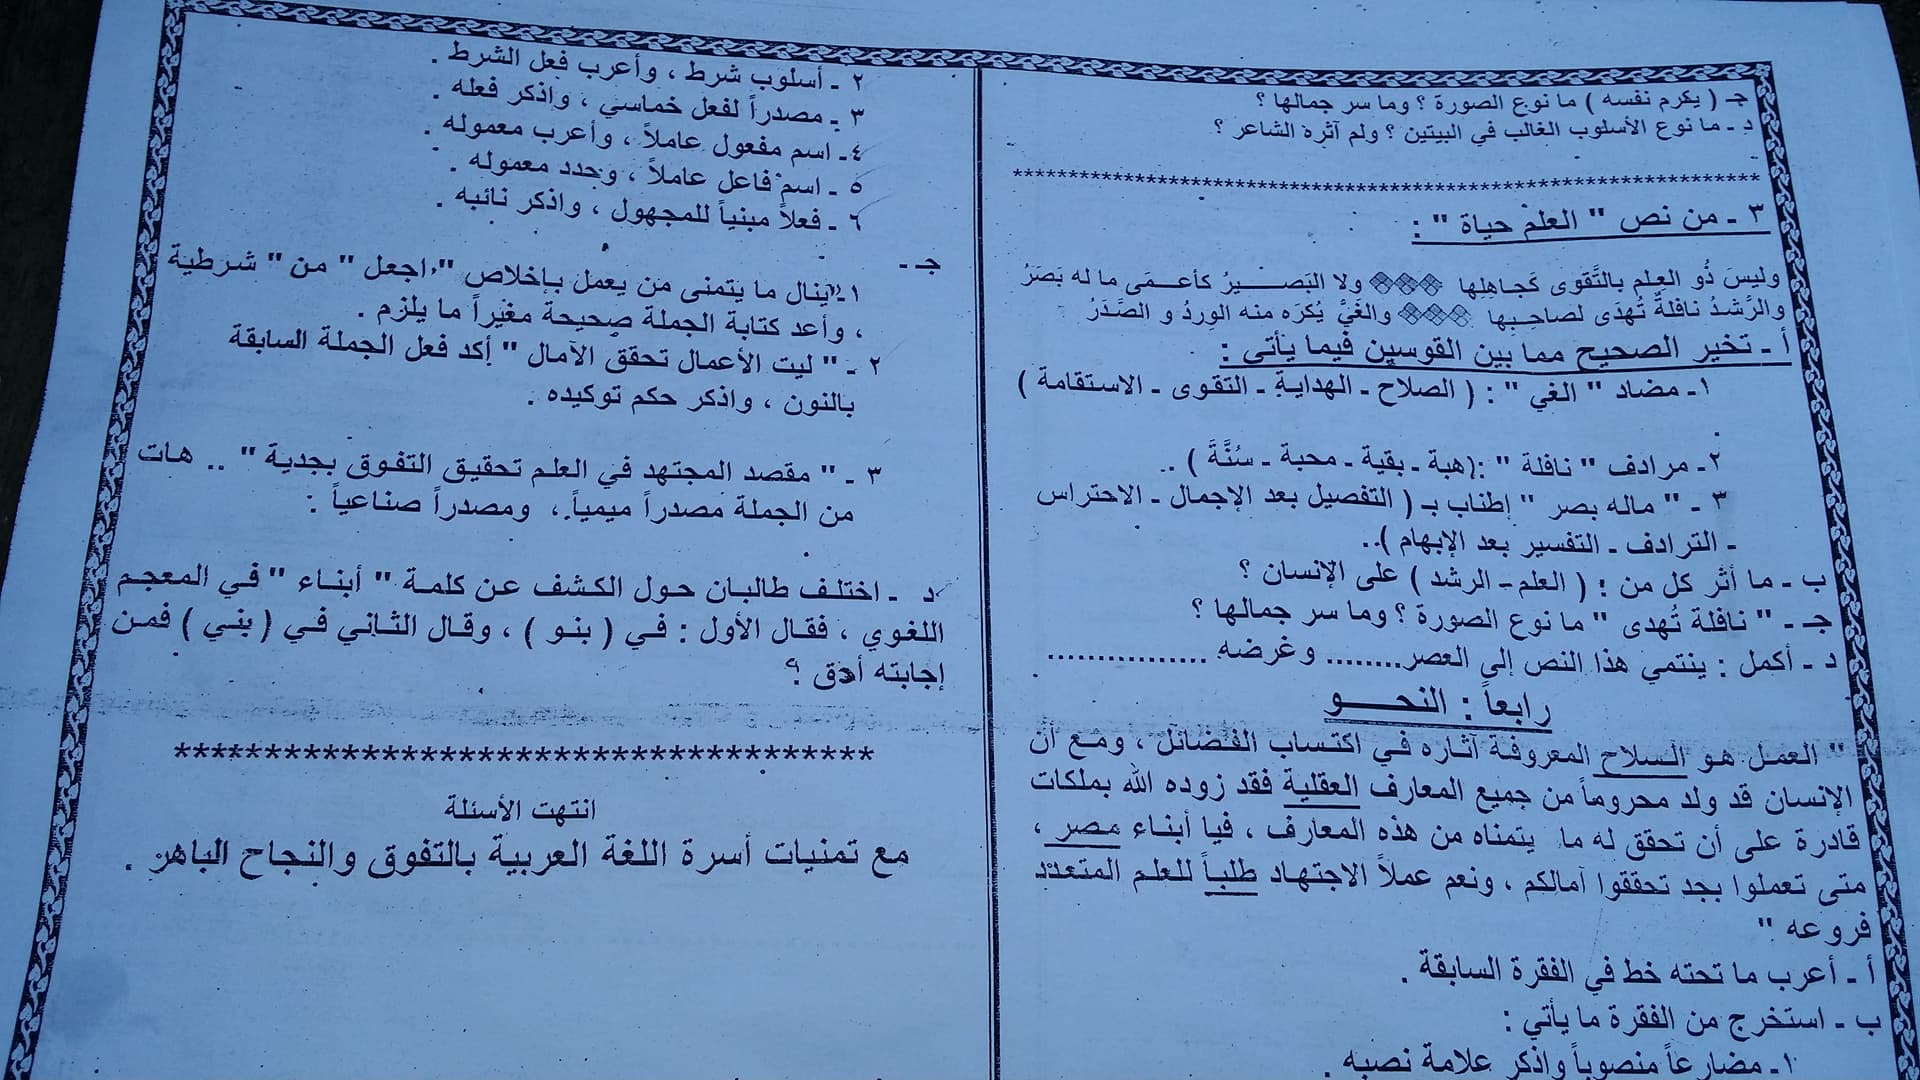 امتحان اللغة العربية للصف الثانى الثانوى الترم الاول 2018 مدرسة الزنكلون بالشرقية